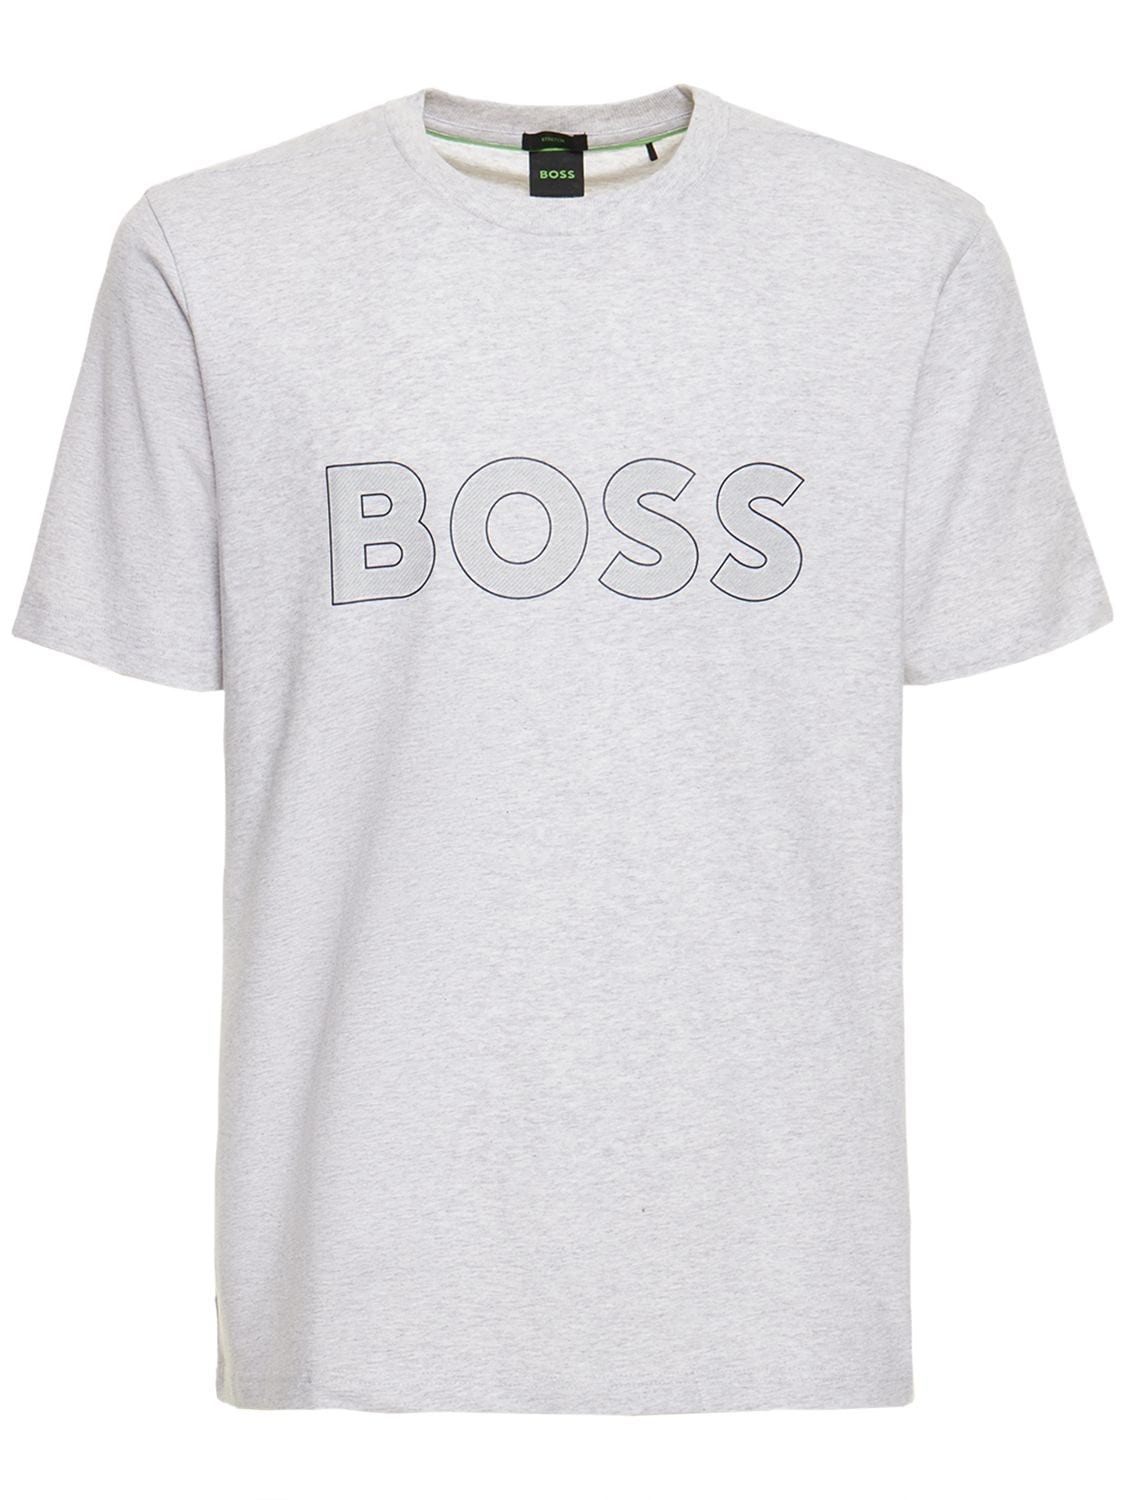 BOSS Cotton T-shirt